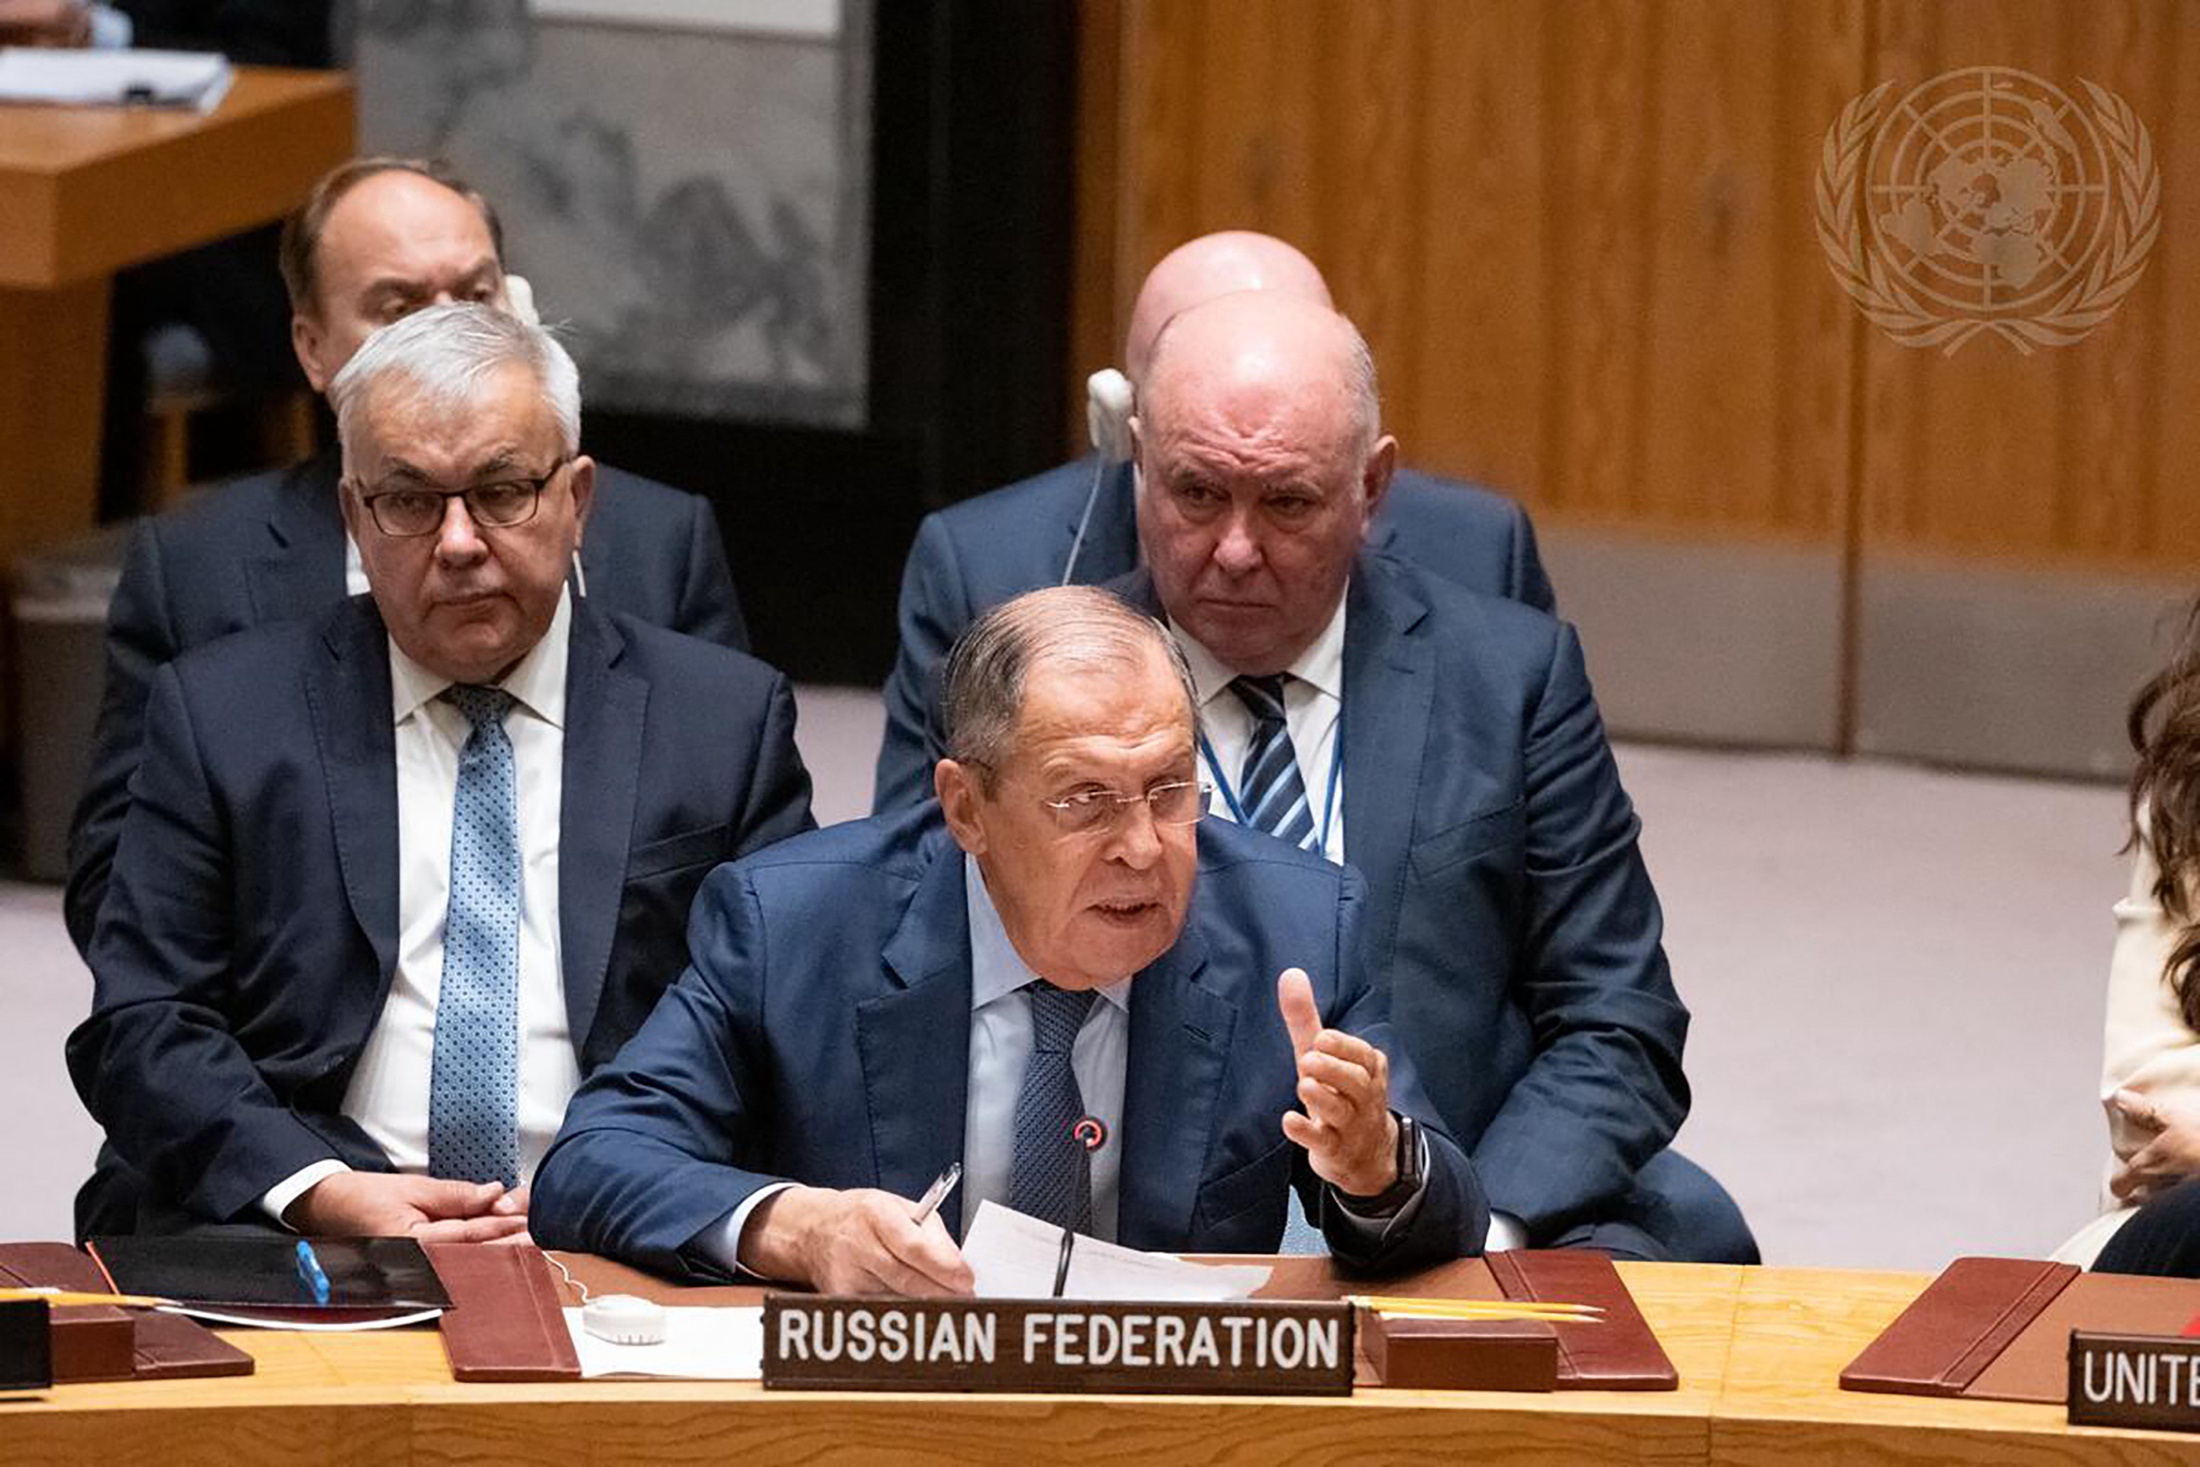 De Russische minister van Buitenlandse Zaken Sergei Lavrov spreekt de Veiligheidsraad toe. De Oekraïense minister van Buitenlandse Zaken wil dat de VN-lidstaten Rusland uit de VN-Veiligheidsraad weren. Rusland is echter permanent lid van de Raad en heeft een vetorecht. Dat gaat dus niet gebeuren, zegt BNR's buitenlandcommentator Bernard Hammelburg.